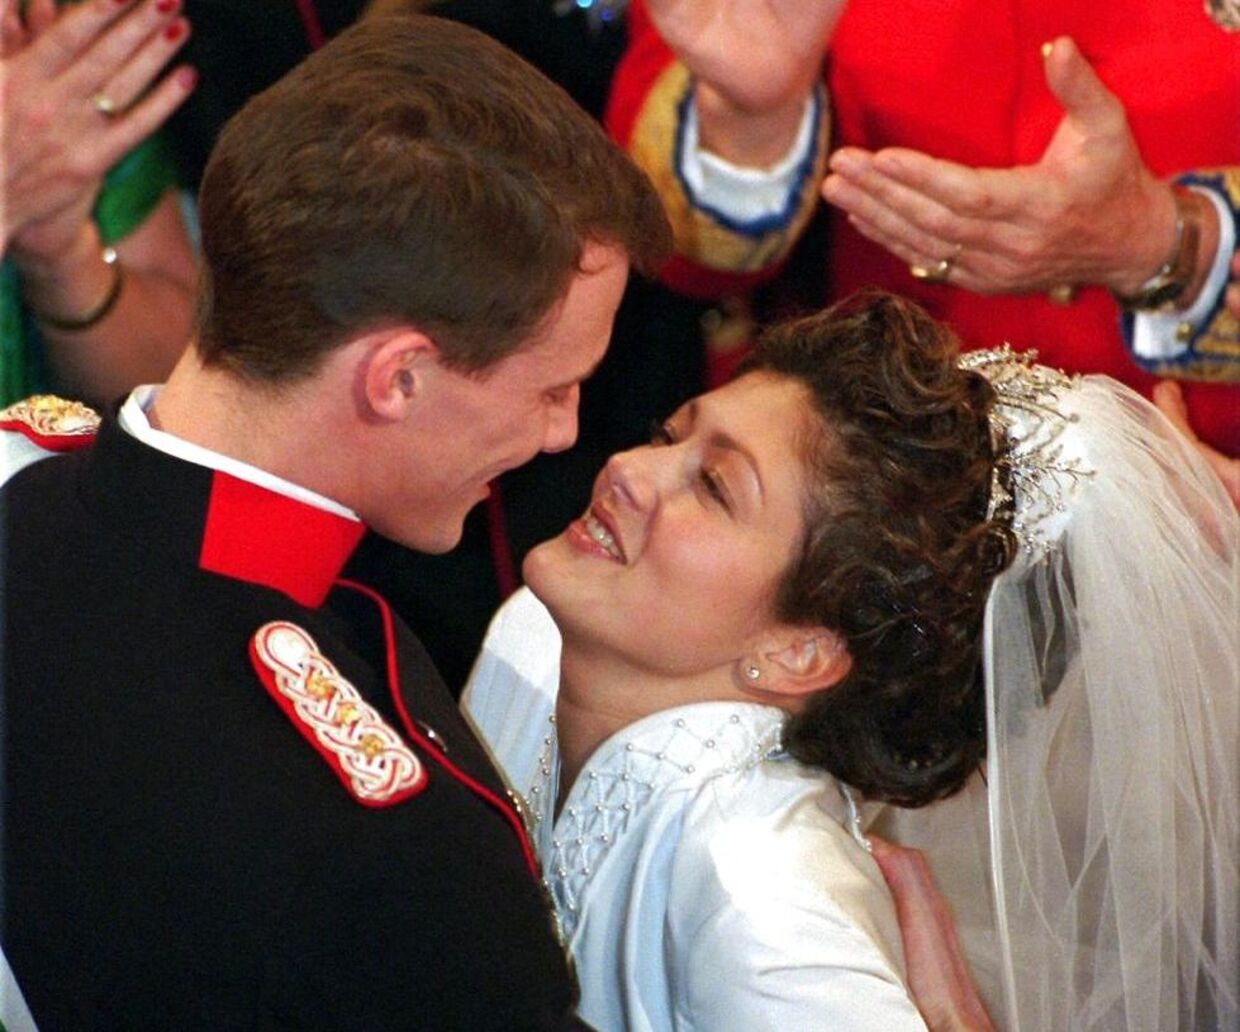 Da prins Joachim og Alexandra dansede brudevalsen i 1995, var det Jens Werner, der havde oplært dem.